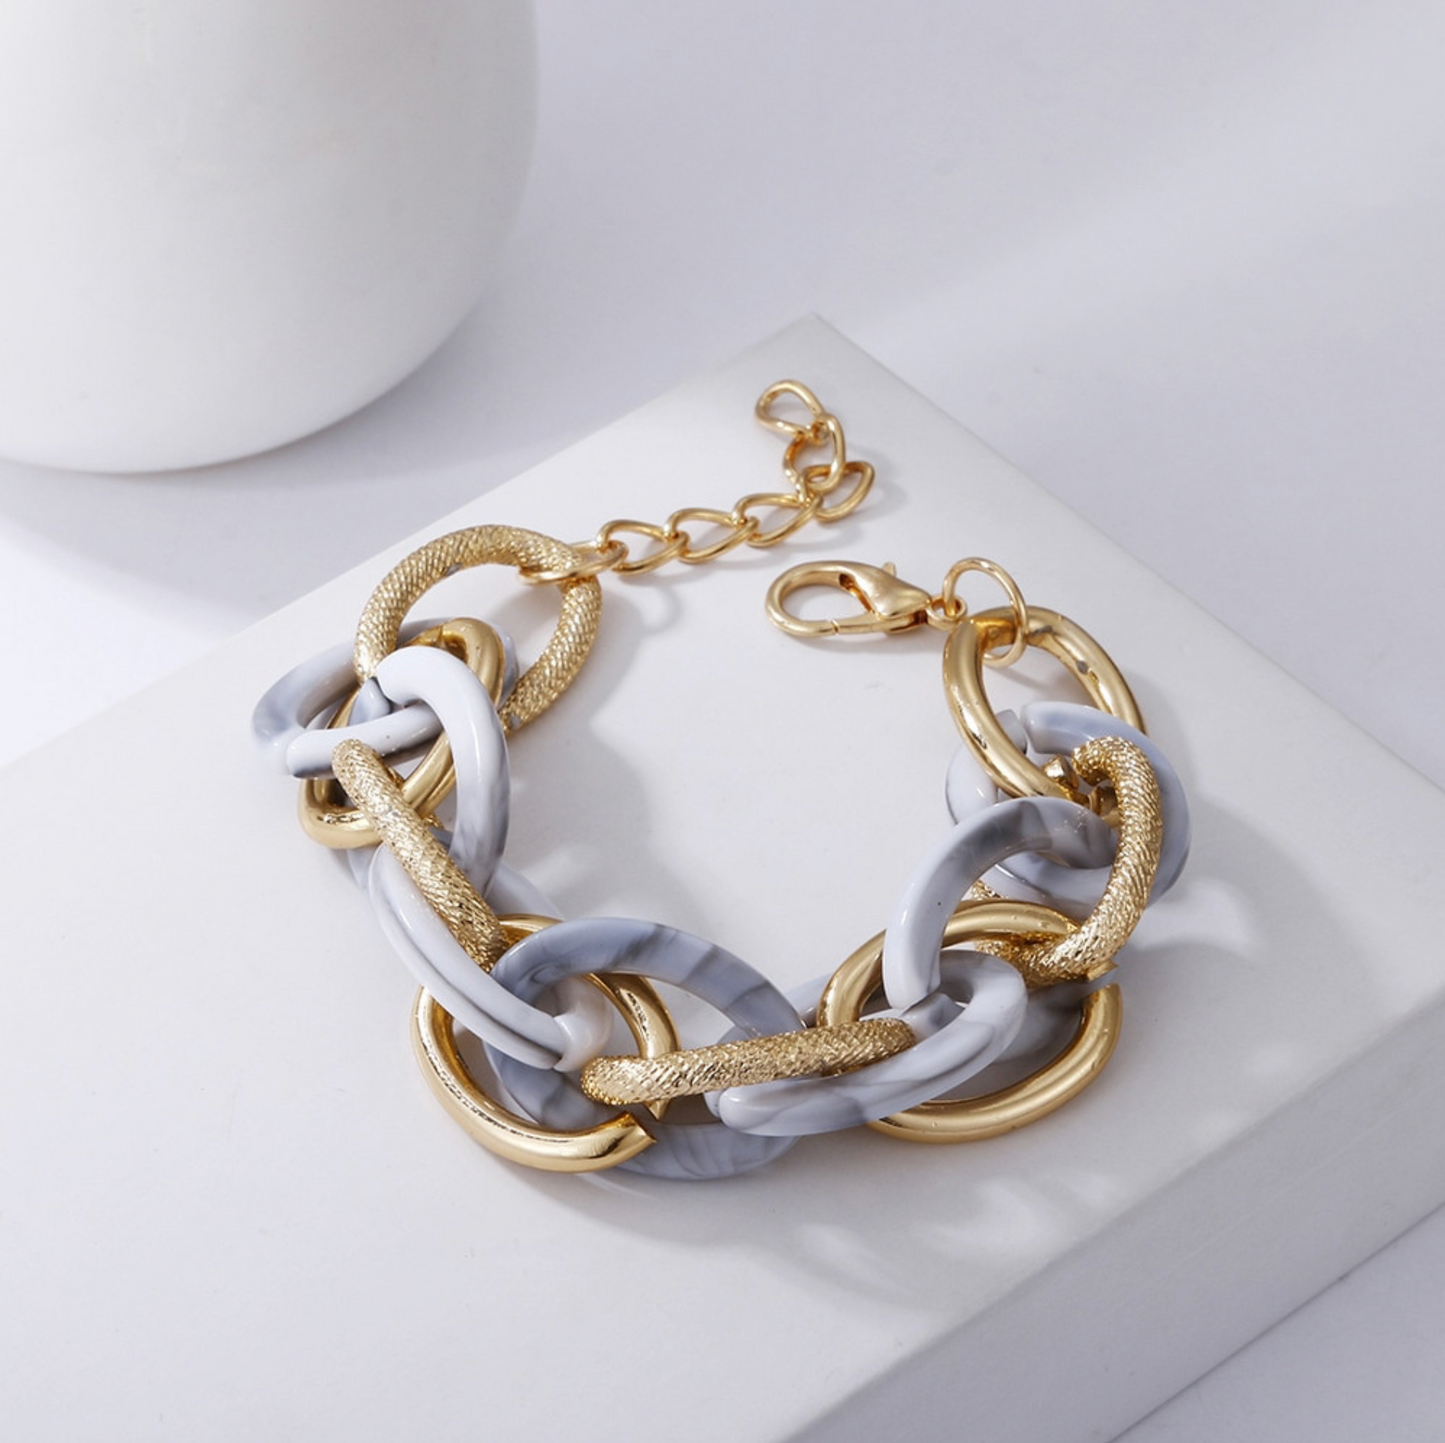 Goldtone Grey Marbled Chain Link Bracelet